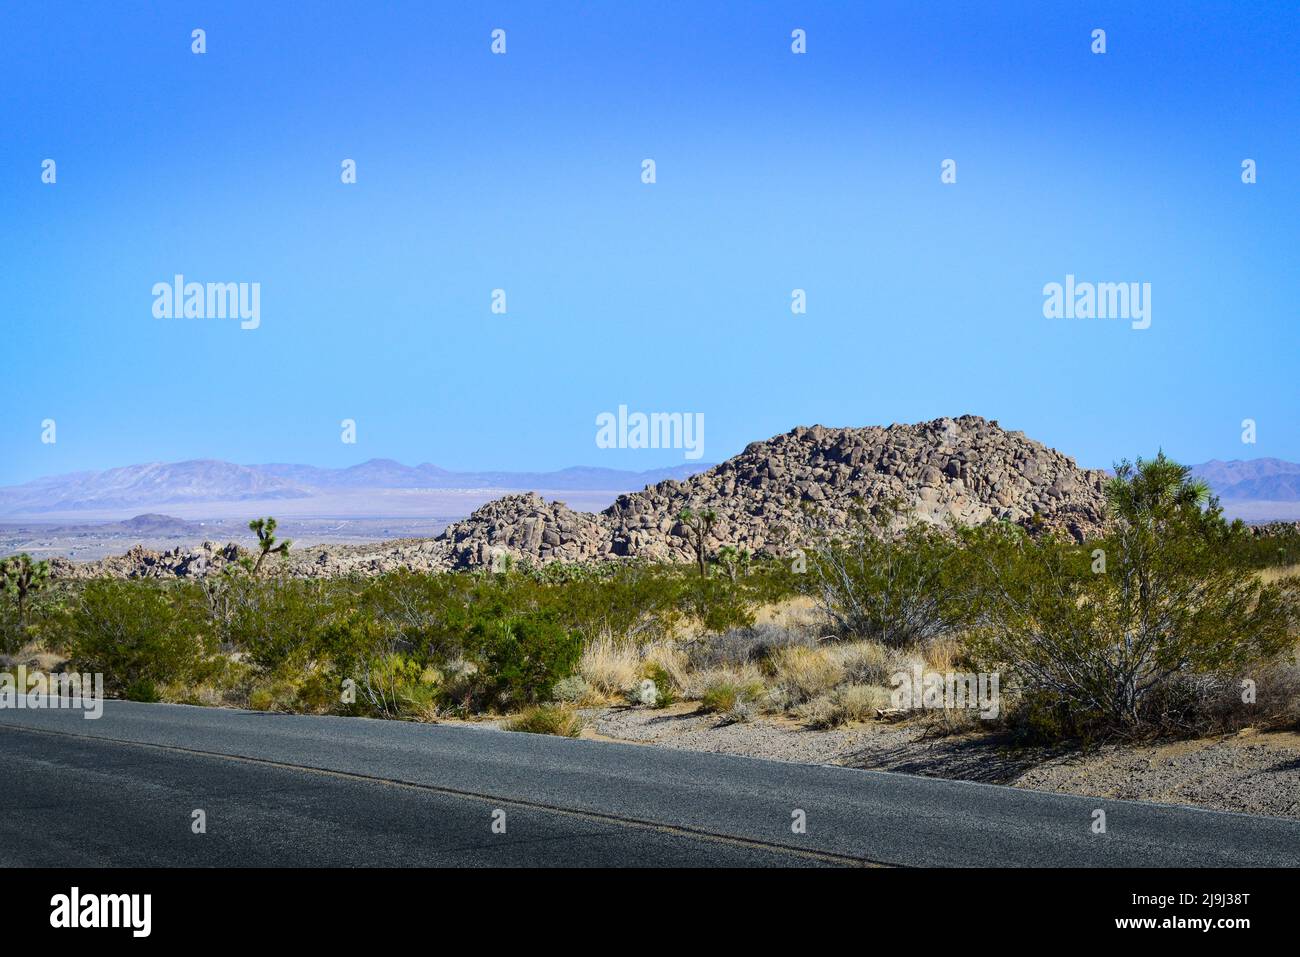 Joshua Tree National Park, dans le désert de Mojave, avec une vue sur l'autoroute de la vallée de Coachcella en expansion et des formations rocheuses avec paysage désertique, CA Banque D'Images